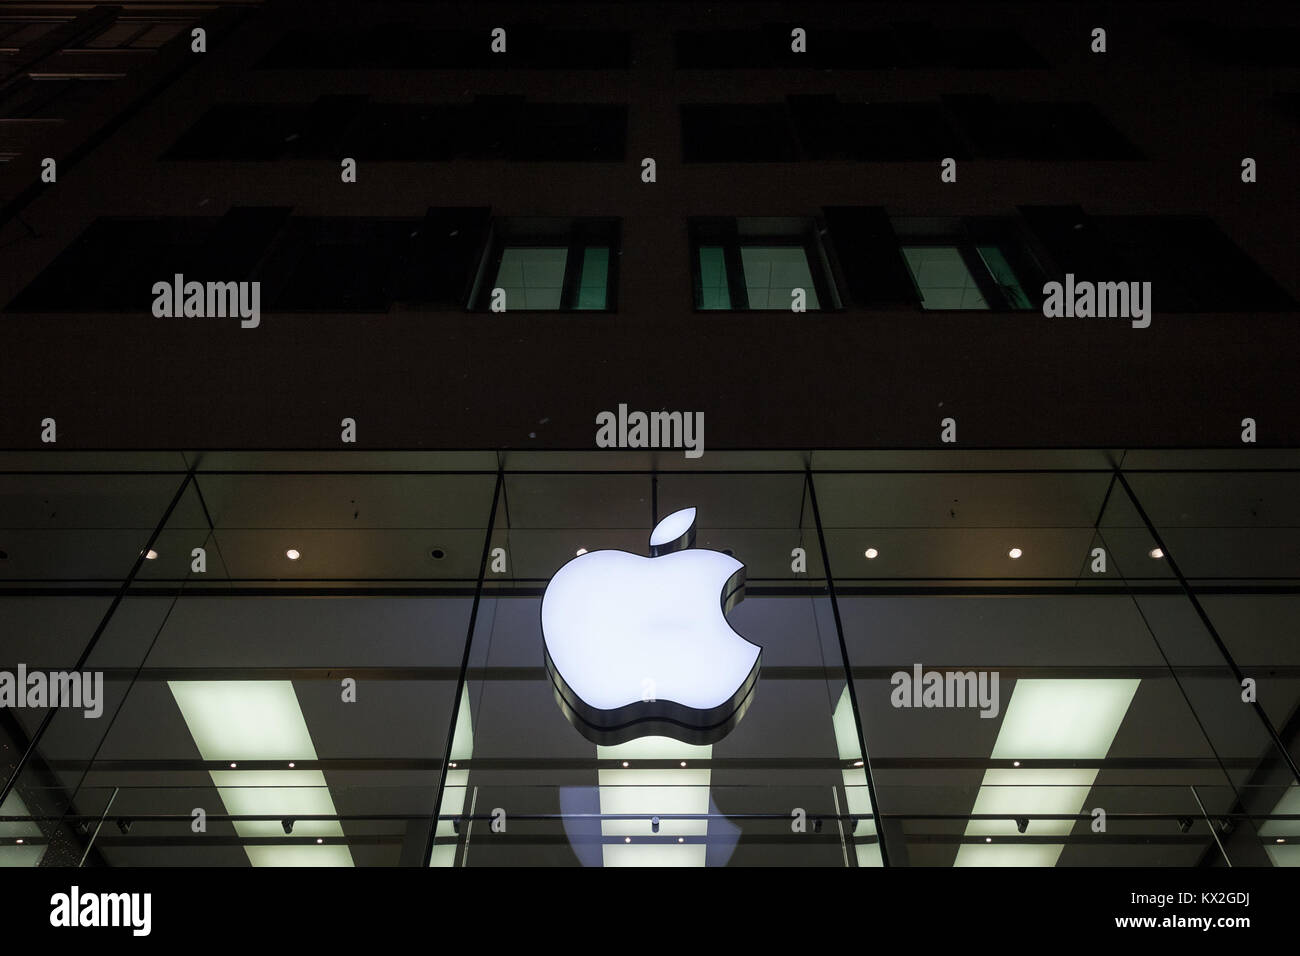 München, Deutschland - Dezember 17, 2017: Apple Logo auf München Apple Store während einer verschneiten Nacht genommen. Apple Store ist eine Kette von Einzelhandelsgeschäften und op Stockfoto